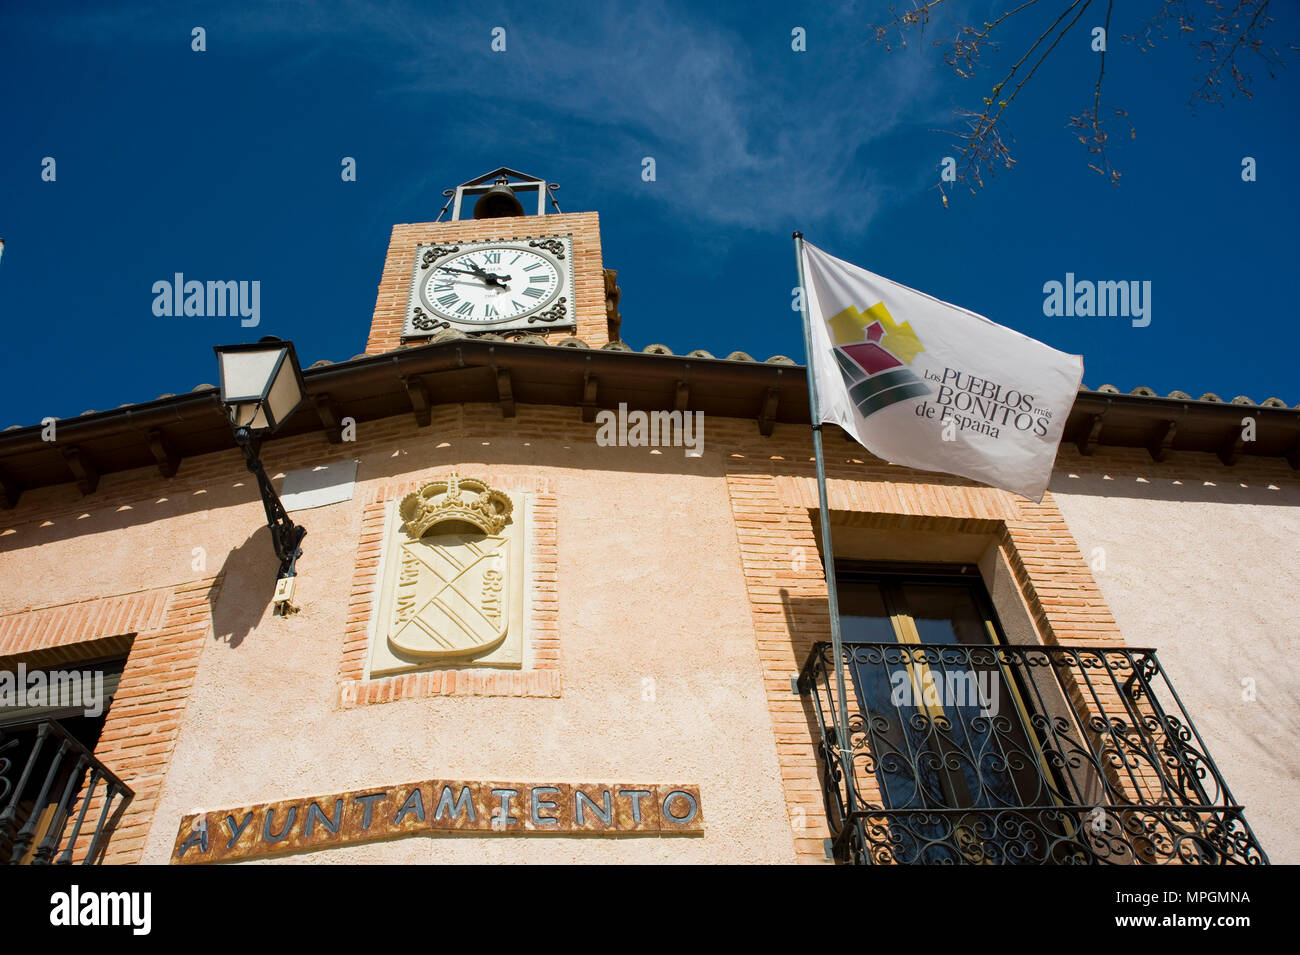 Town hall. Hita, Guadalajara. Spain Stock Photo